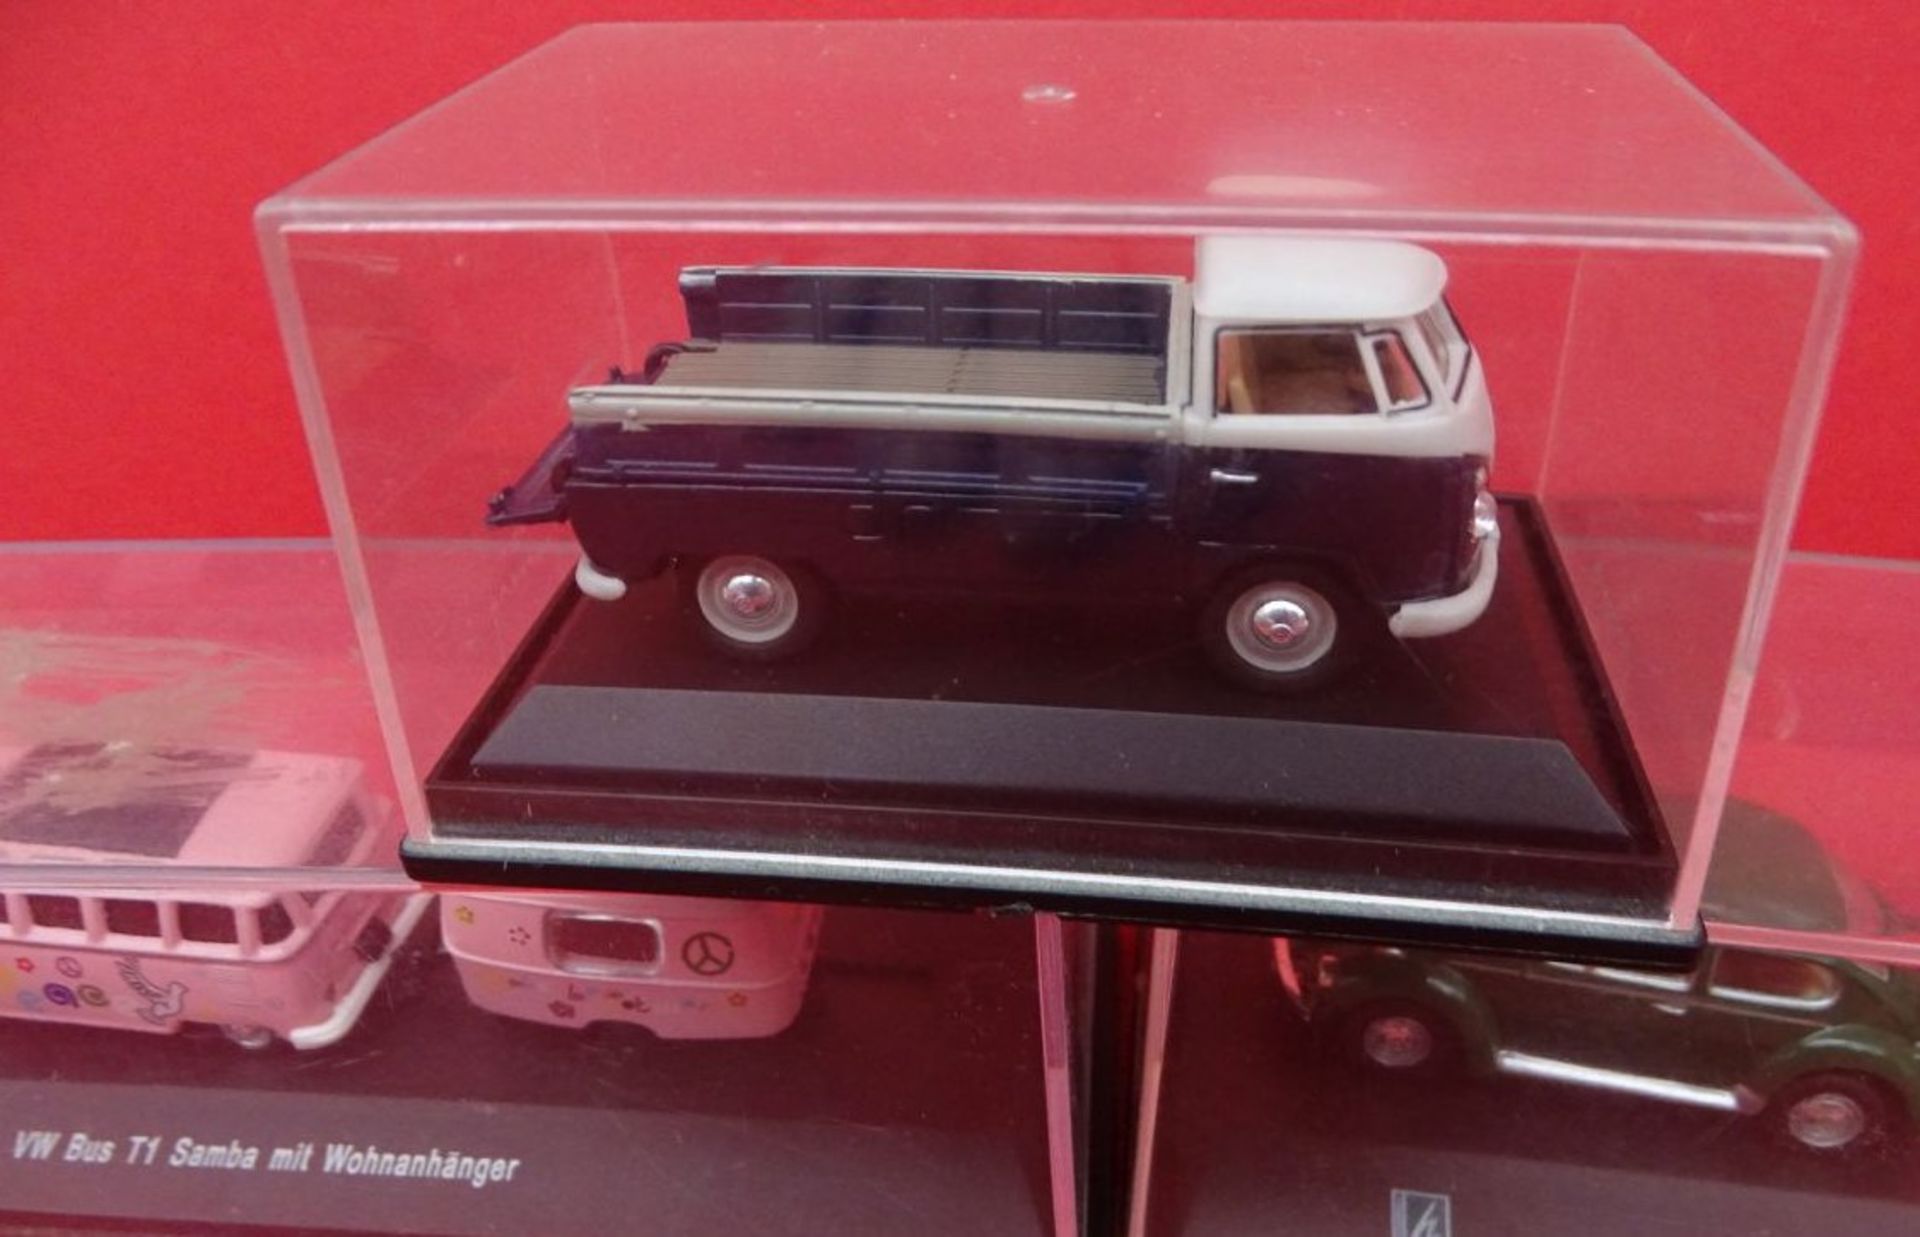 3x VW Modelle in Display,2x davon mit Wohnwagen "Hongwell" 1:43 - Image 3 of 5